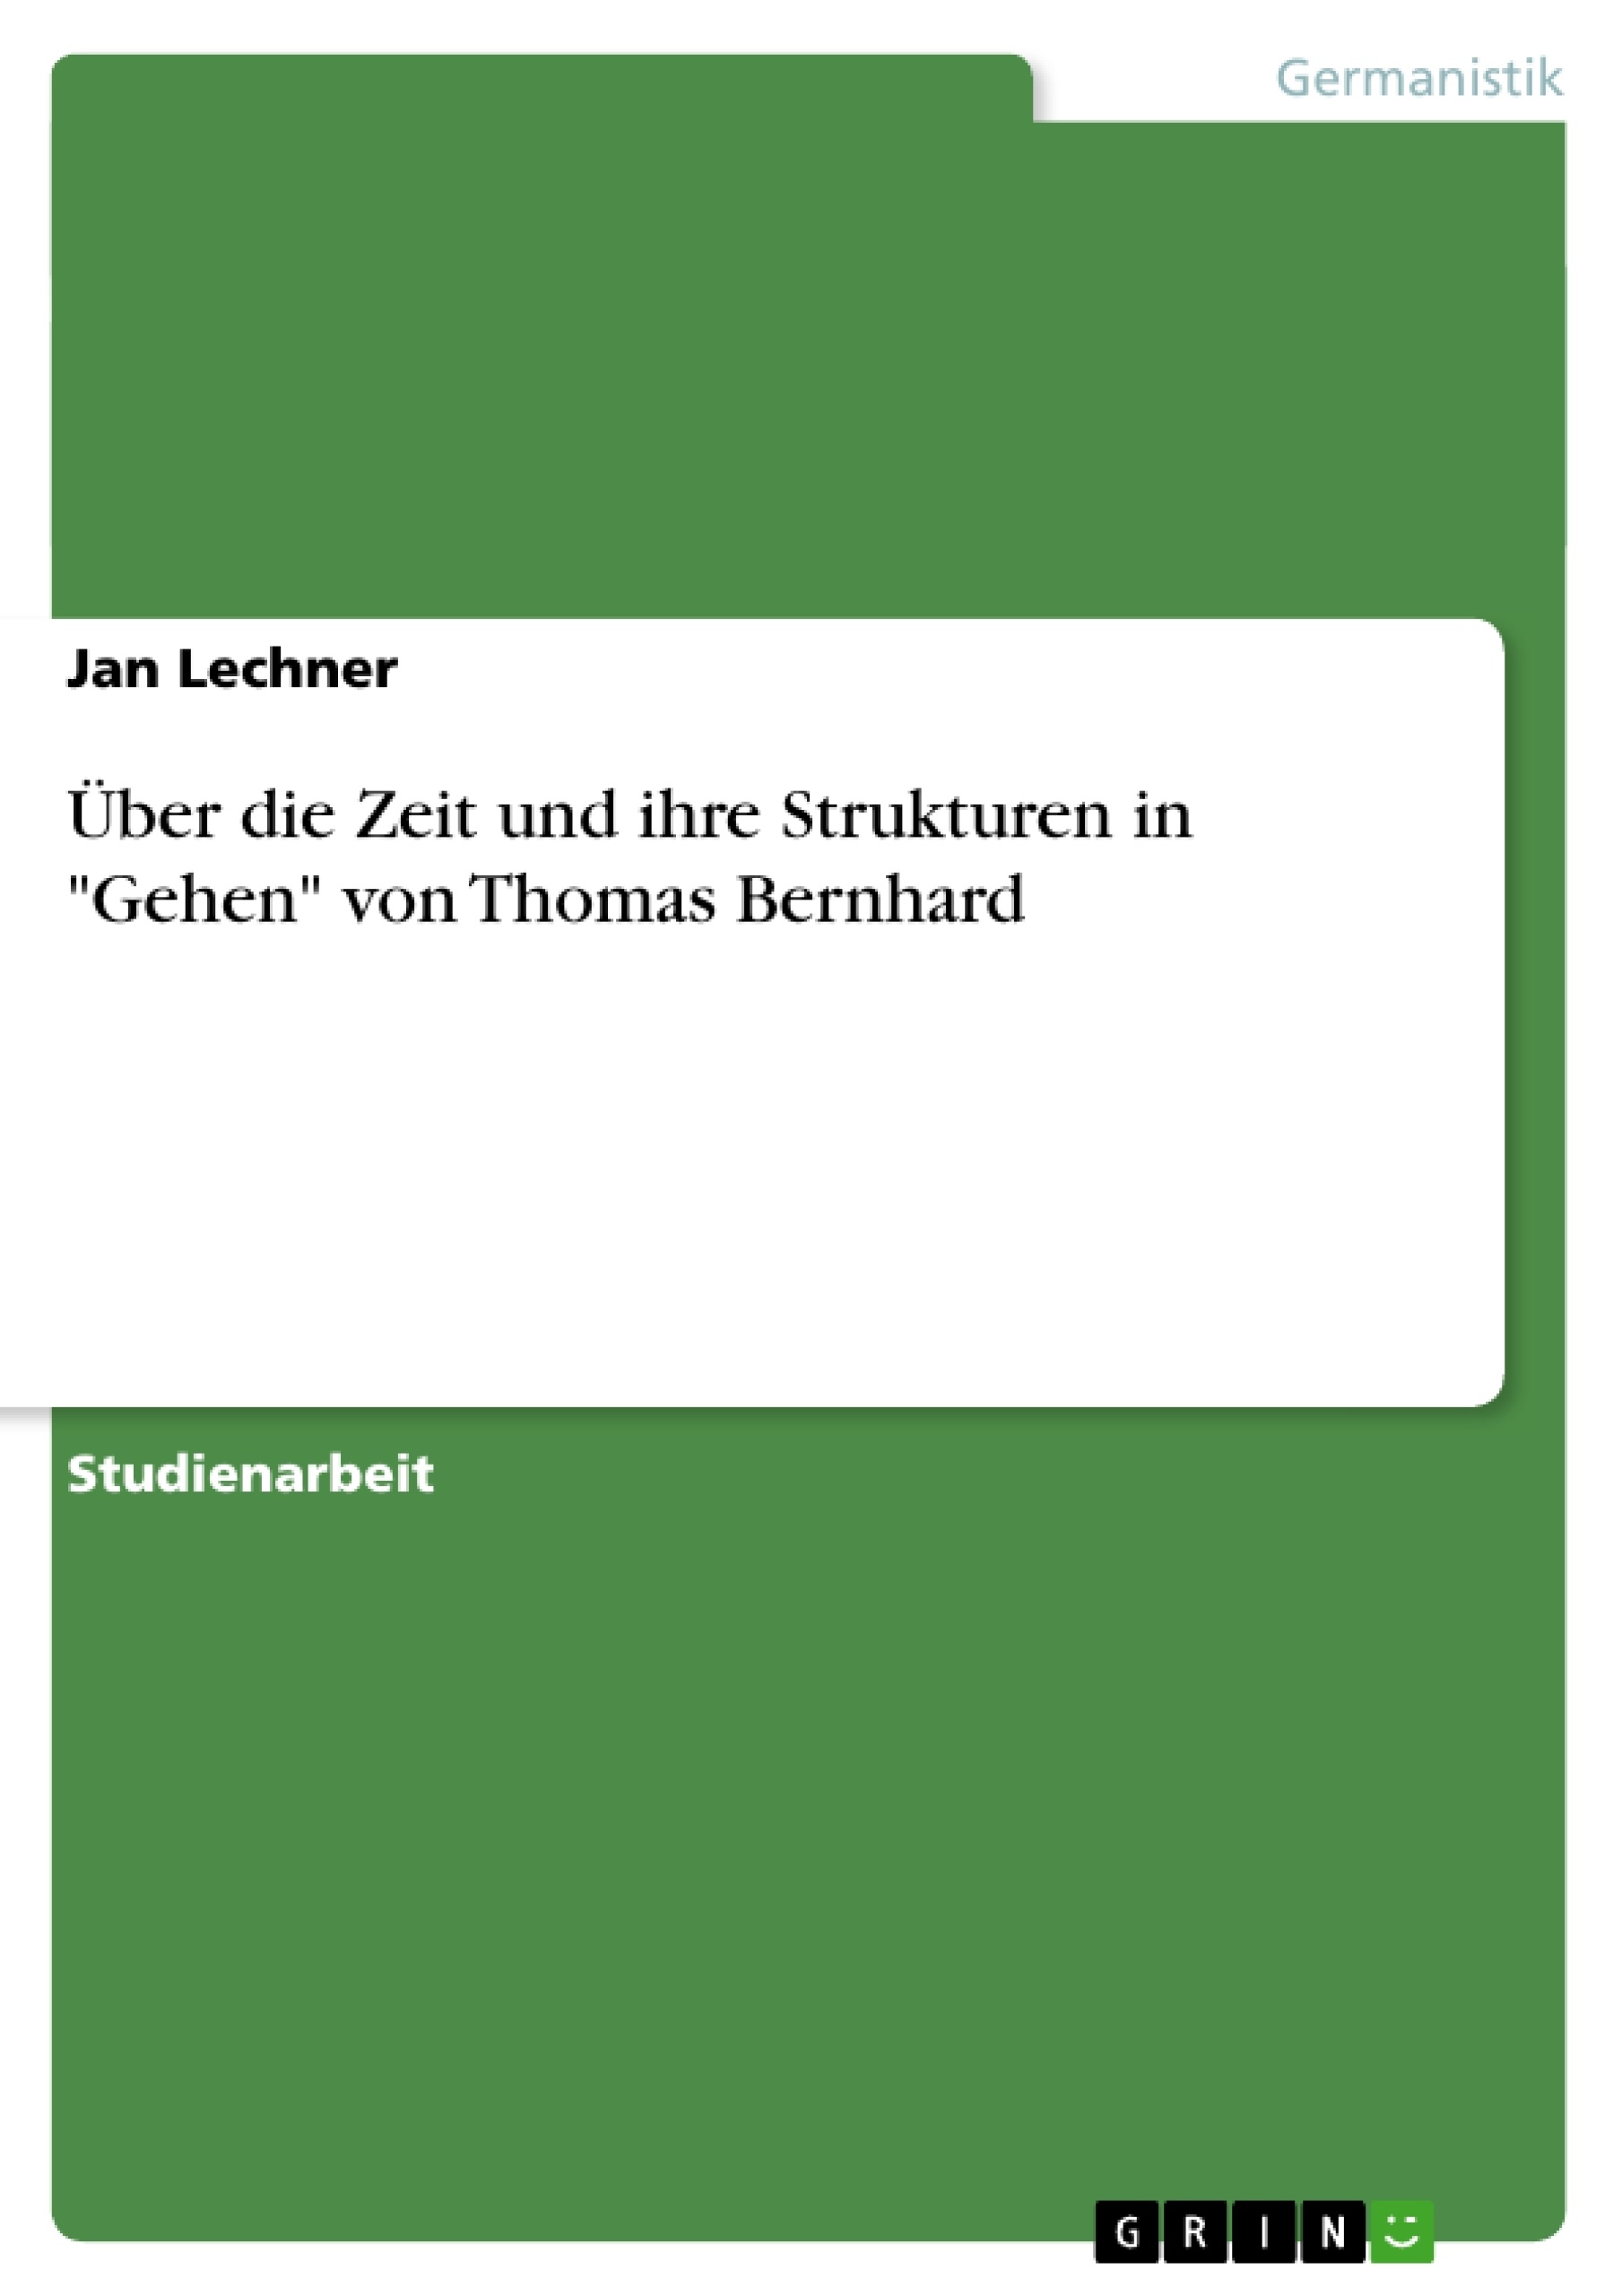 Title: Über die Zeit und ihre Strukturen in "Gehen" von Thomas Bernhard